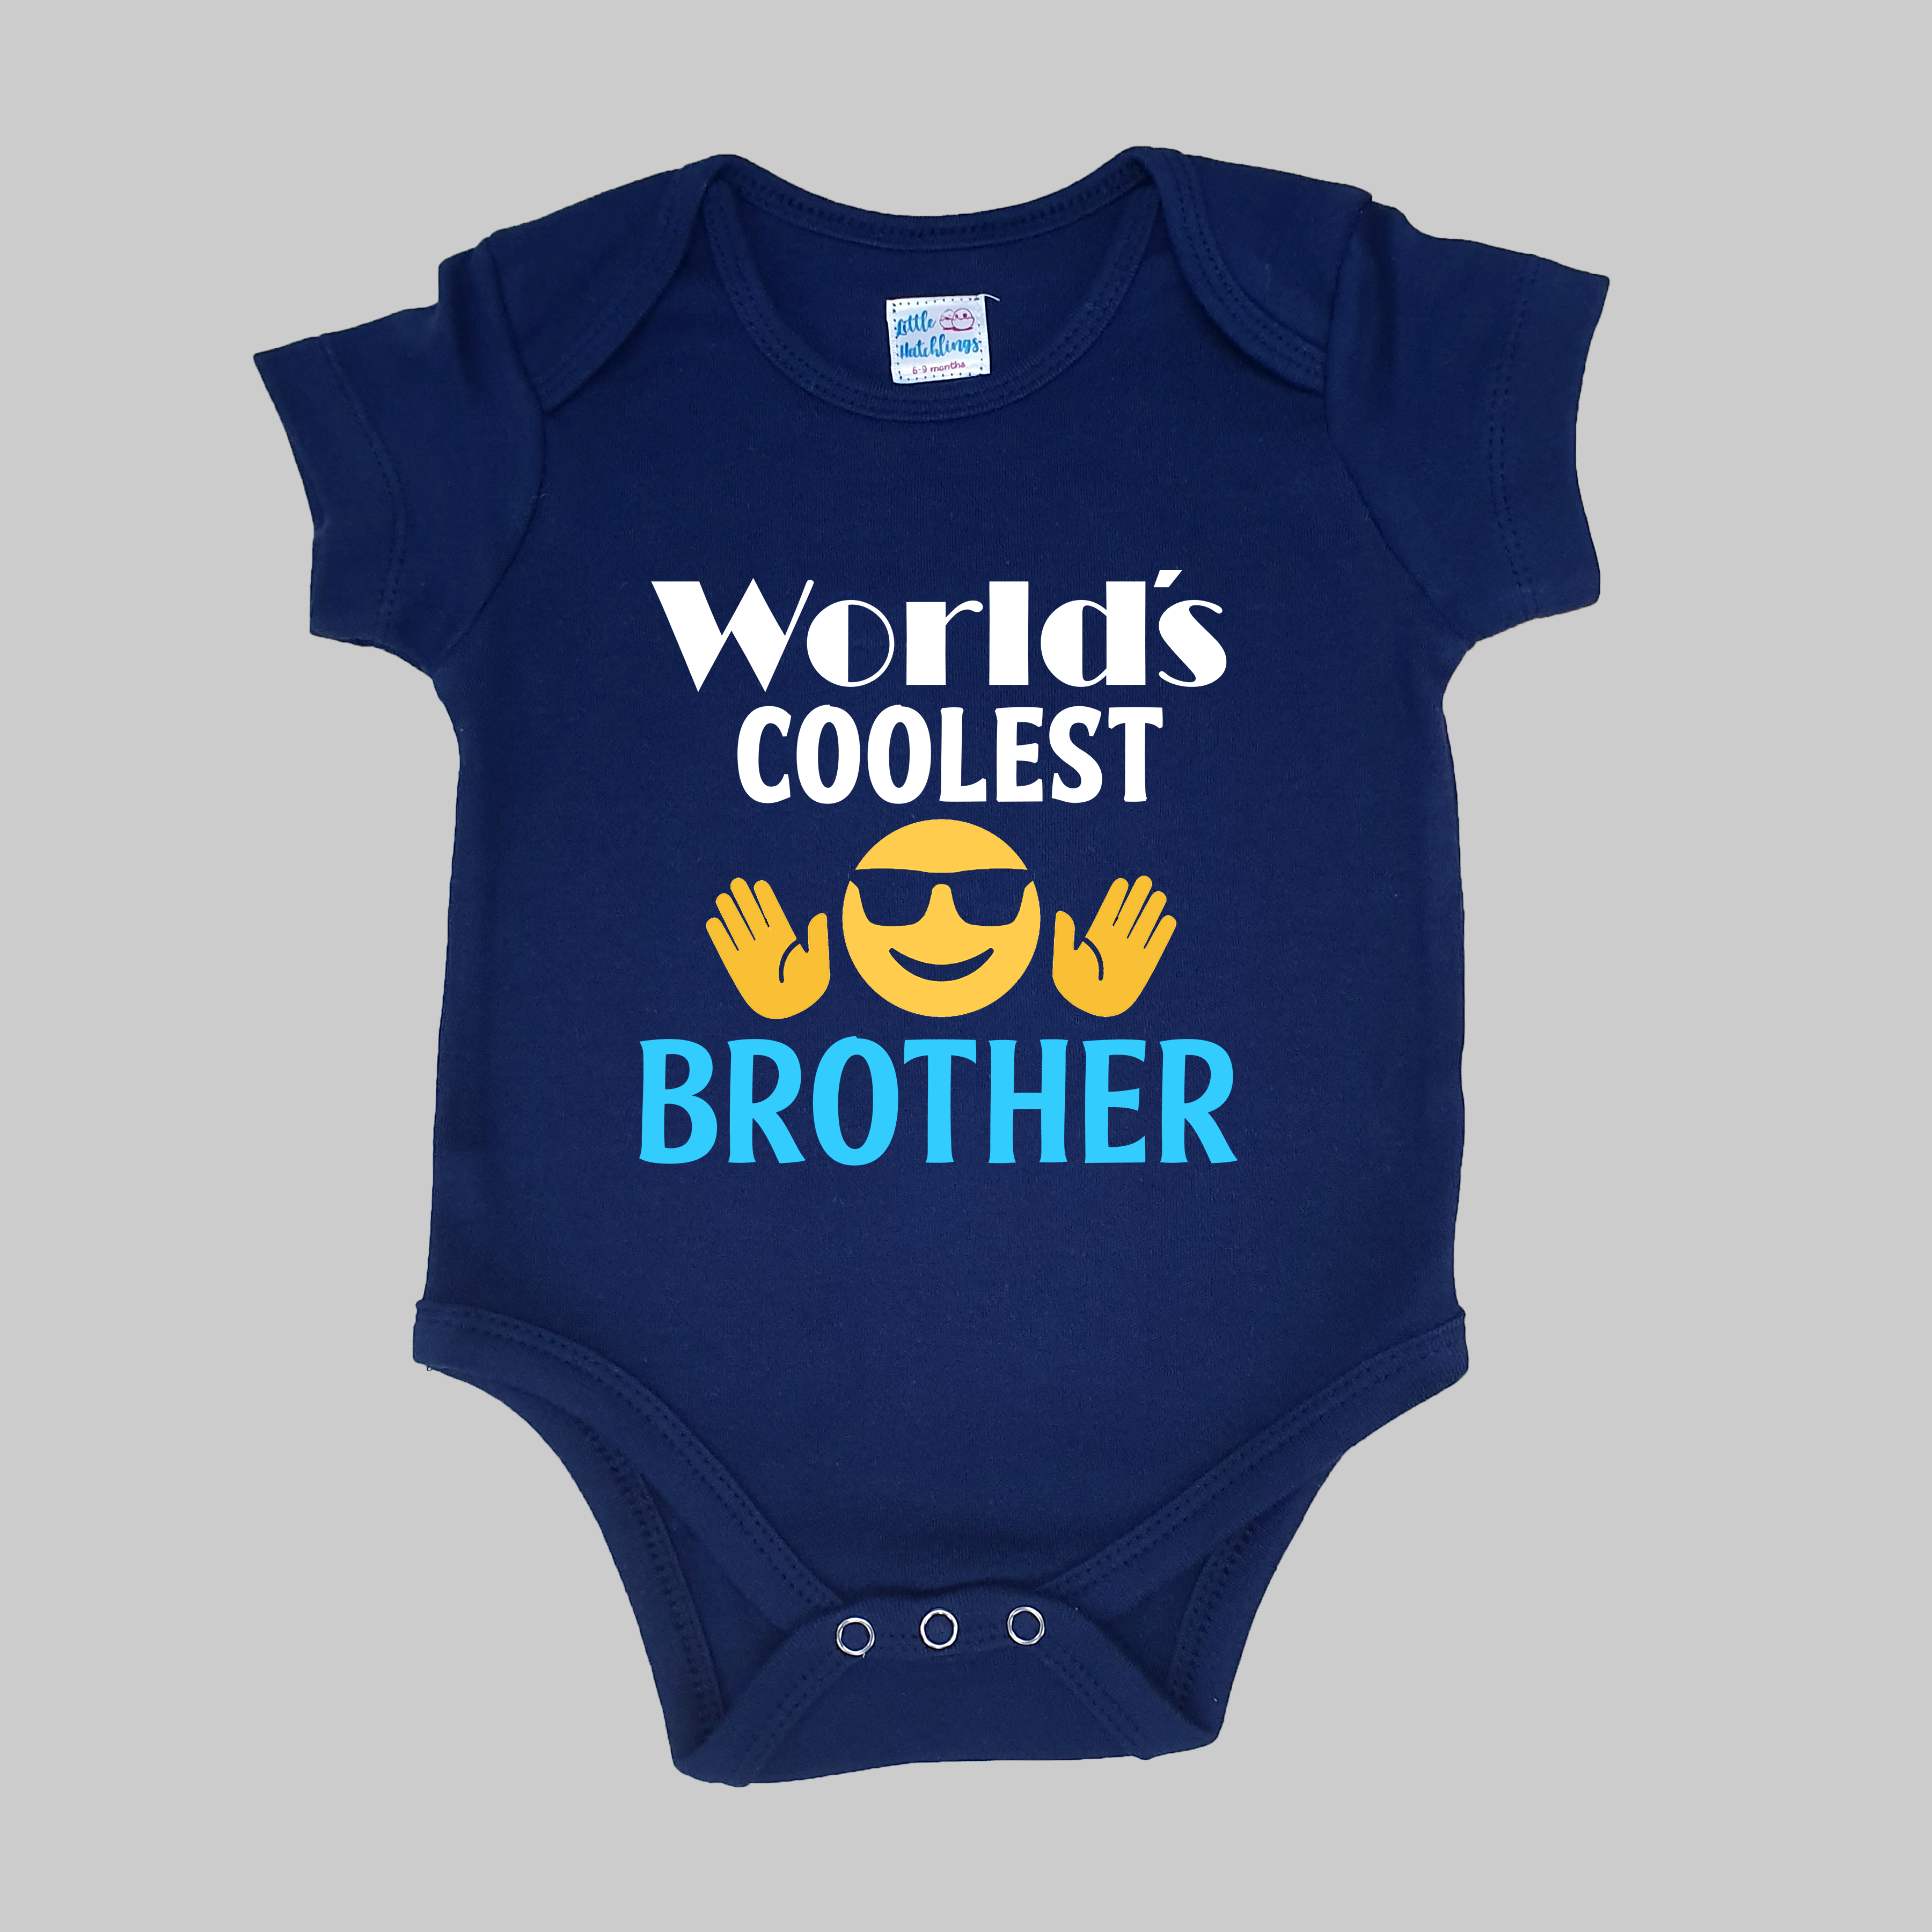 World's Coolest Brother Navy Blue Onesie / Tshirt